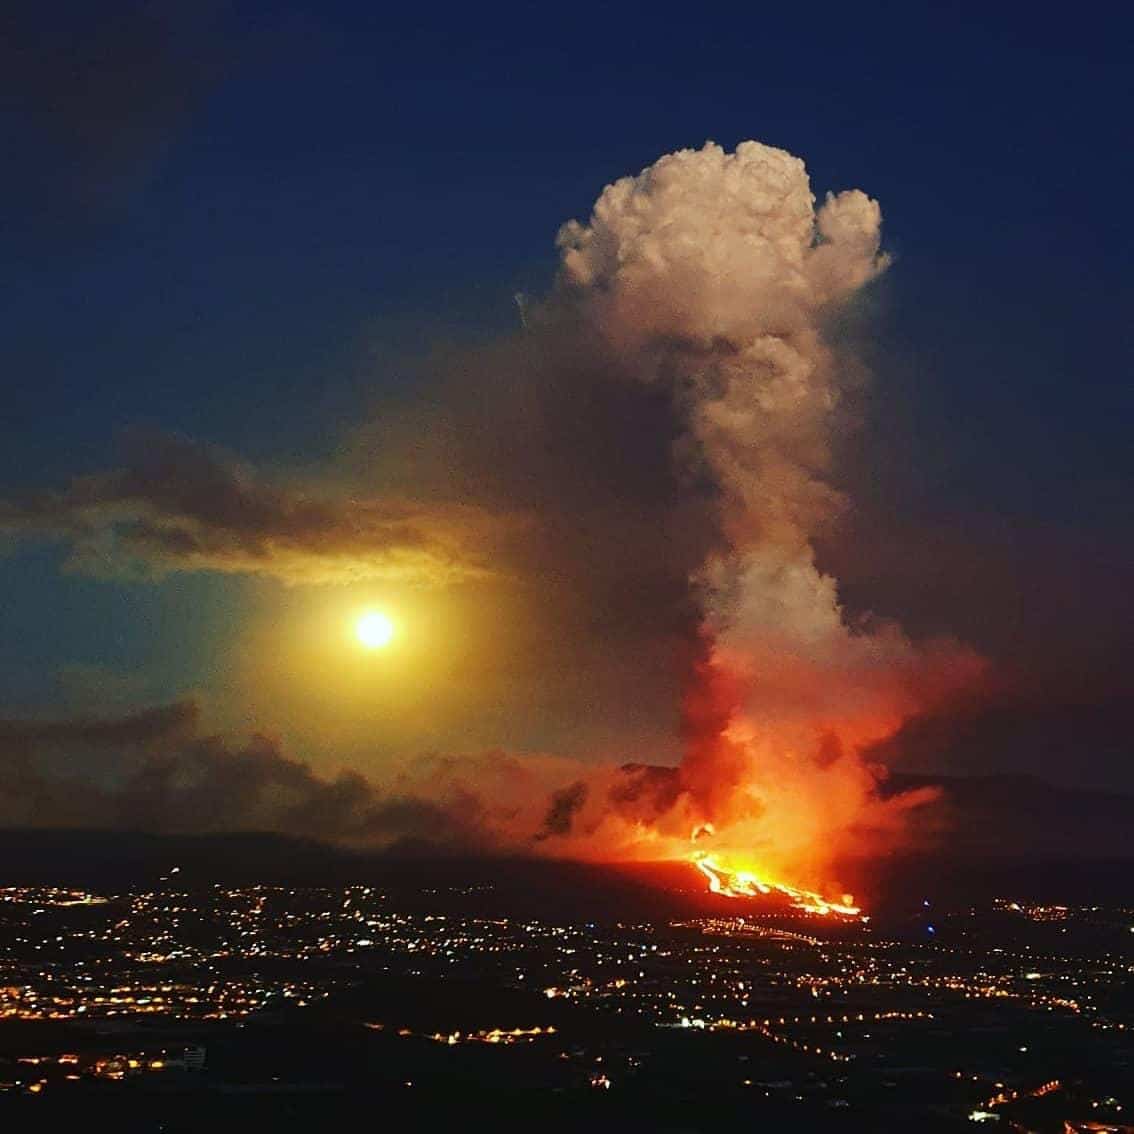 Volcán de La Palma erupción de Septiembre de 2021